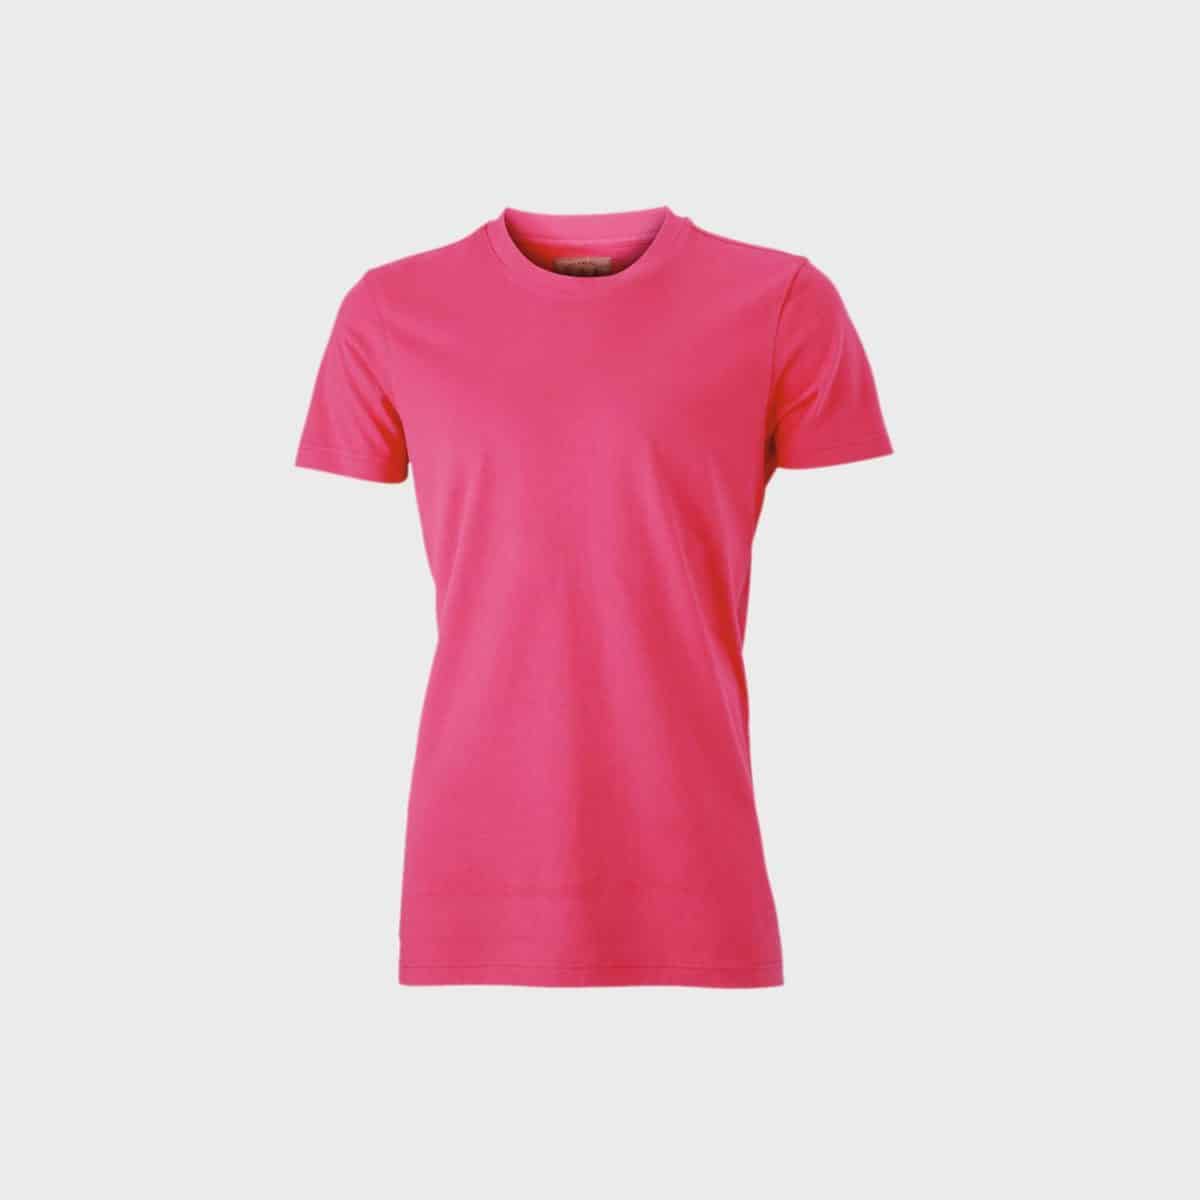 vintage-t-shirt-herren-pink-kaufen-besticken_stickmanufaktur